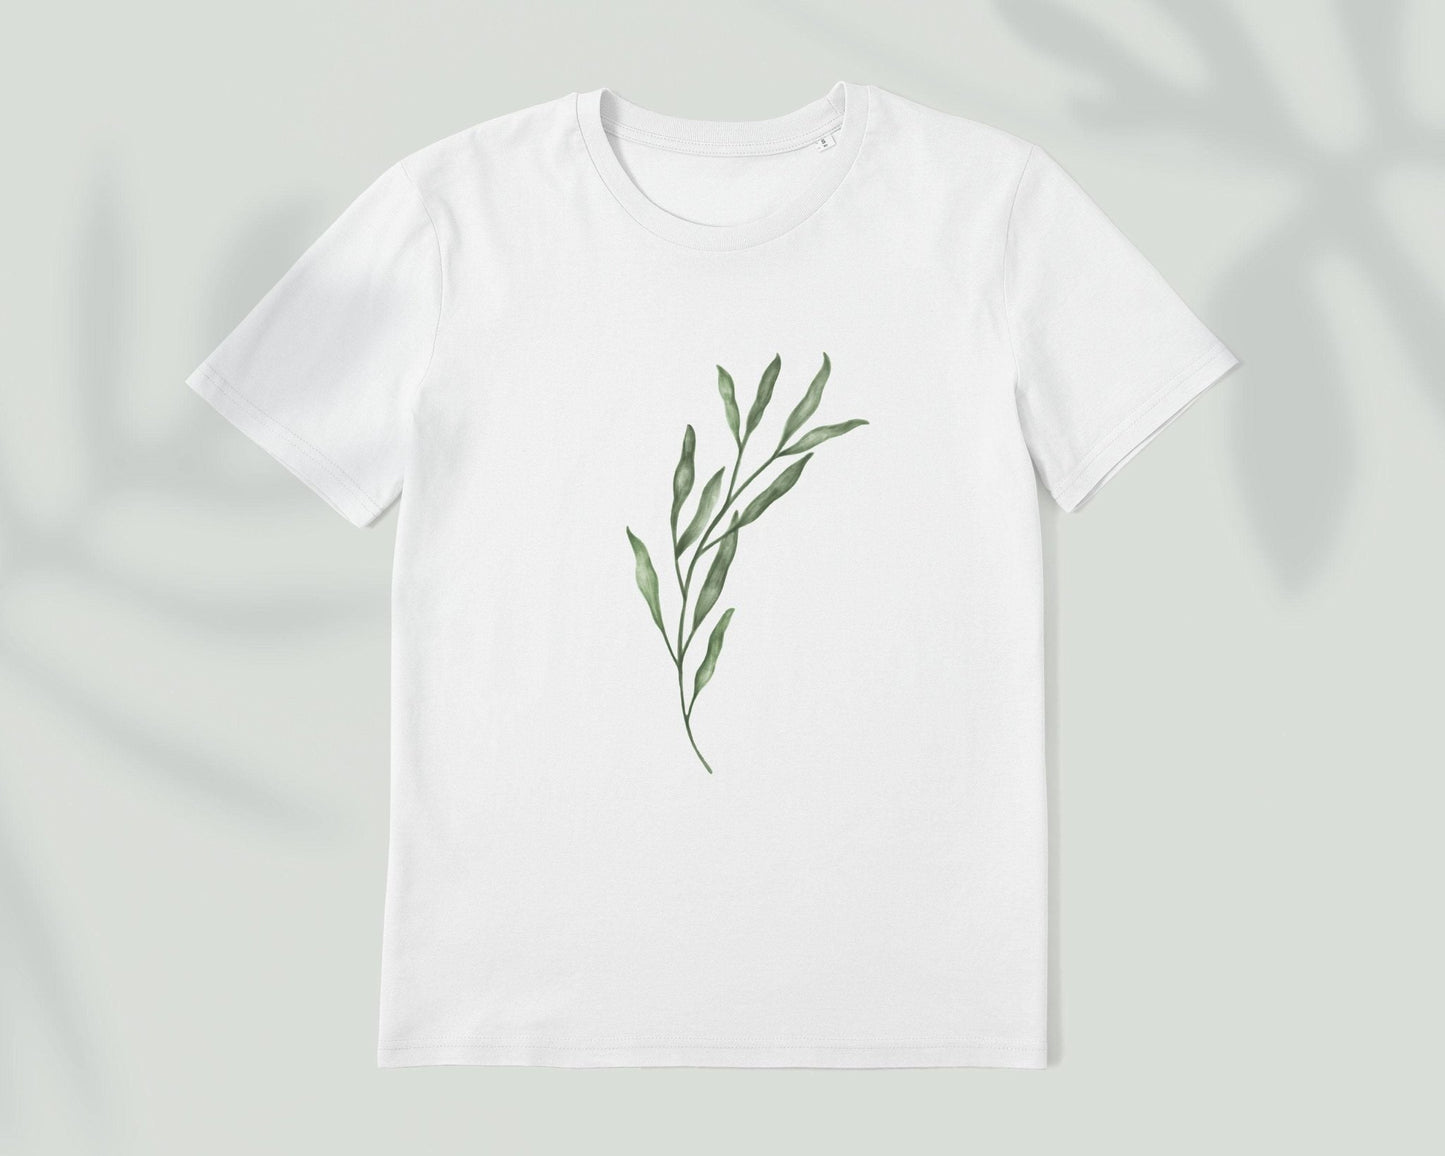 Illustrated Plant Leaf T-Shirt - Pathos Studio -